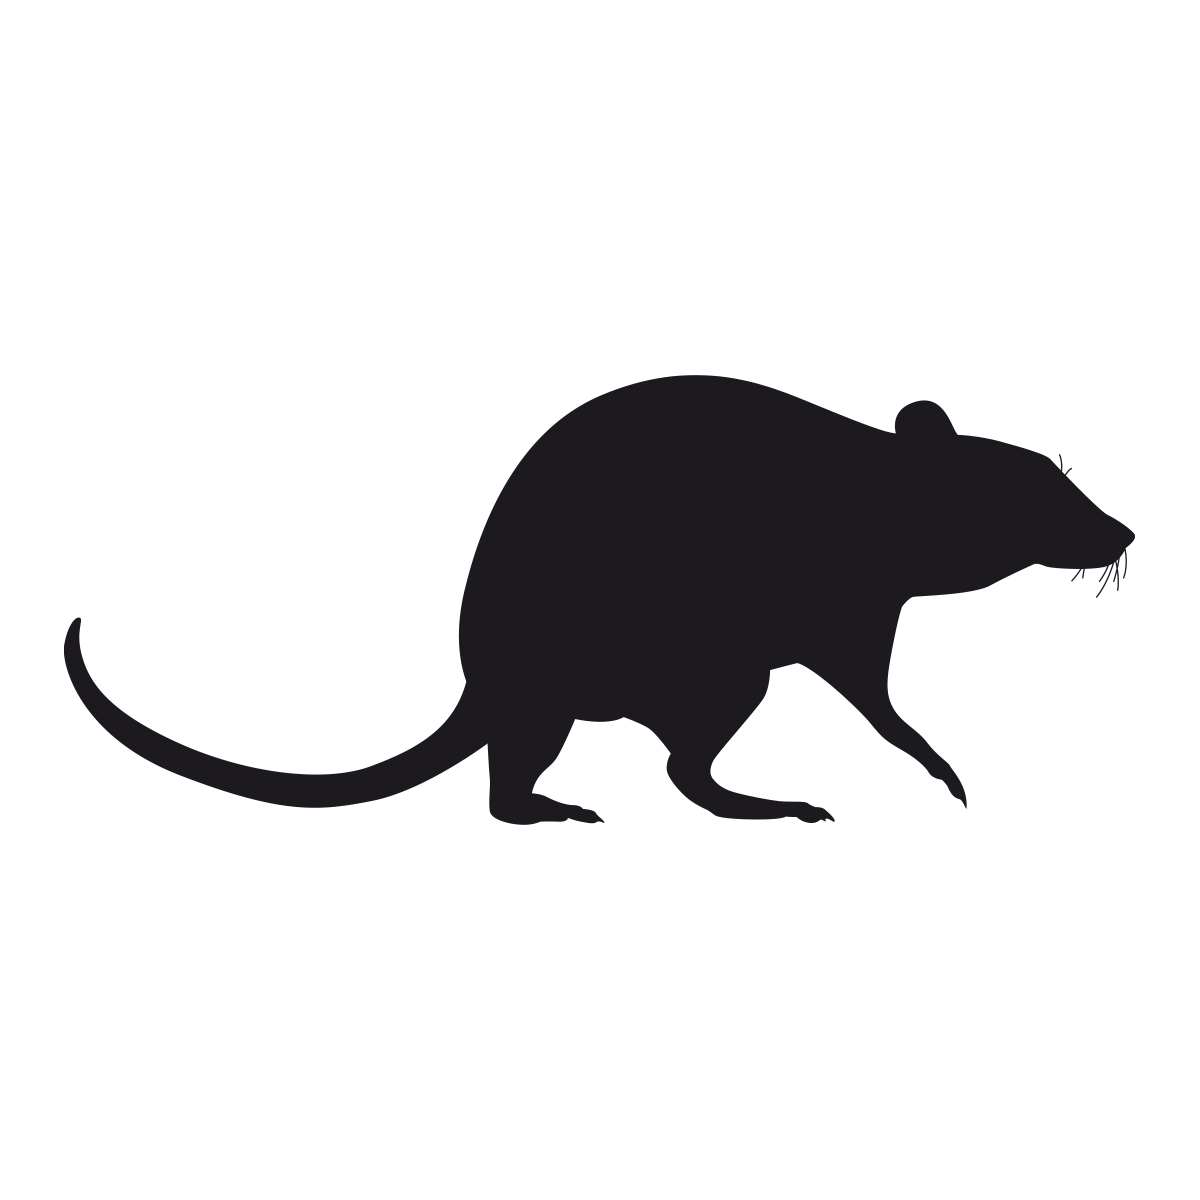 Black Rat Illustration for Pest Management